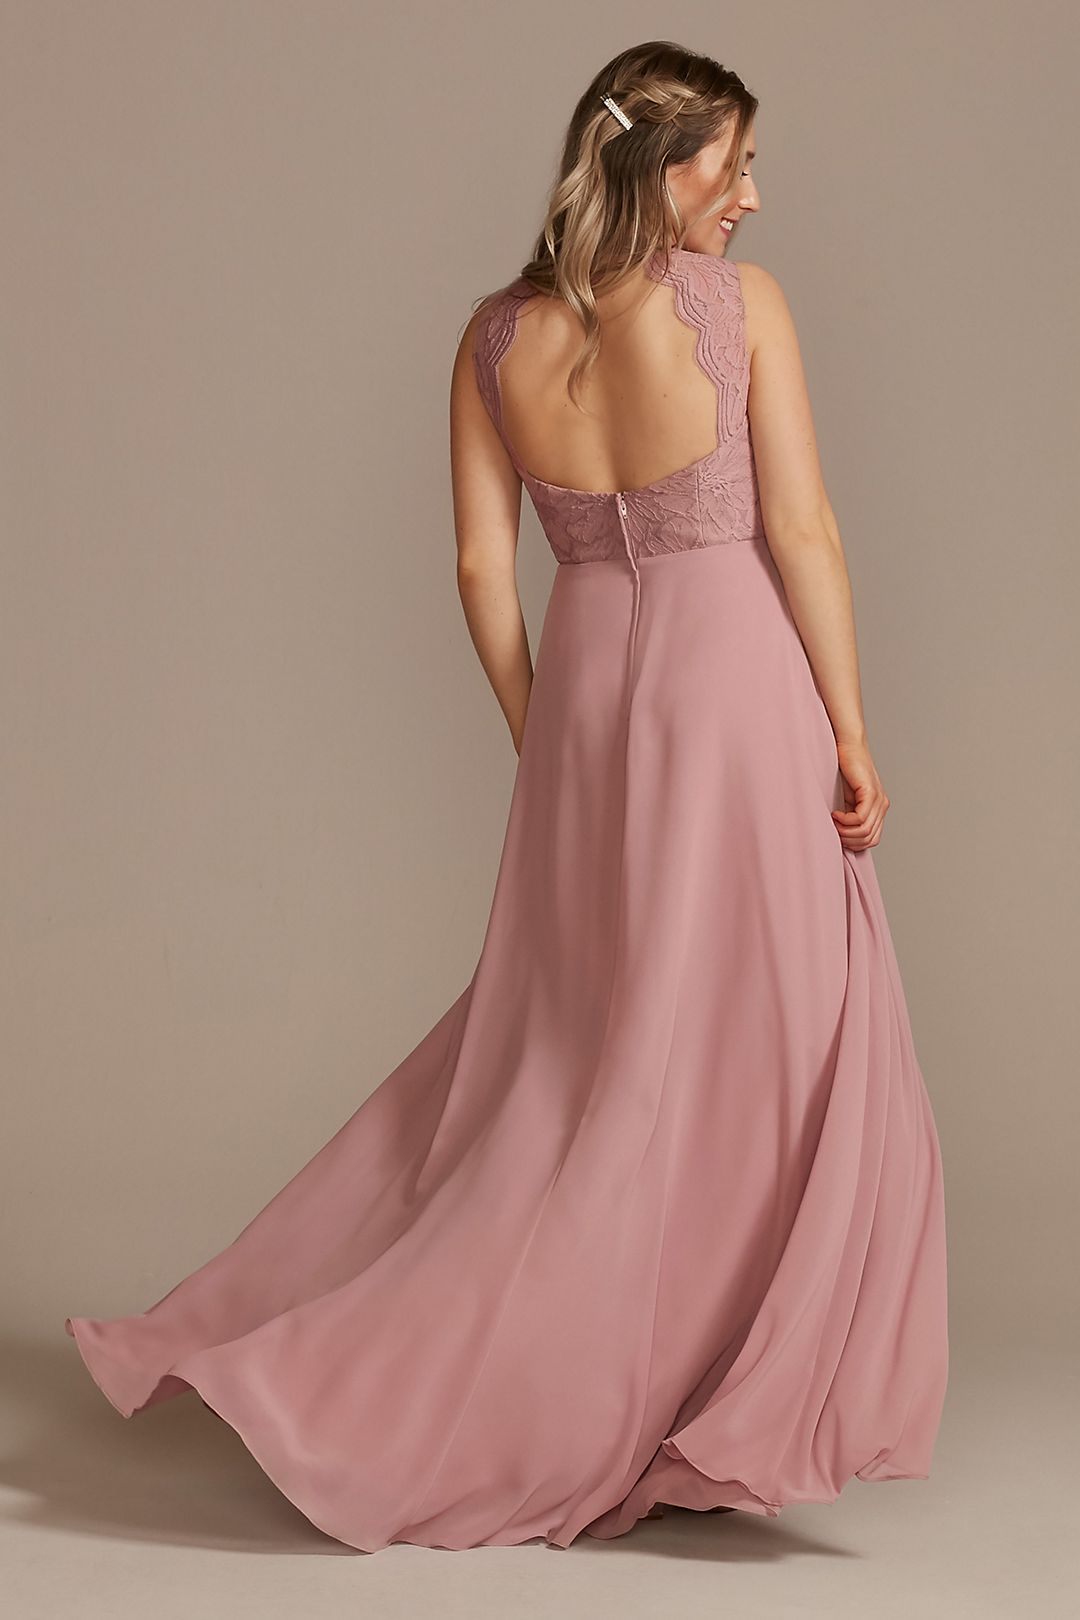 Lace Chiffon Tank Long Bridesmaid Dress Image 4